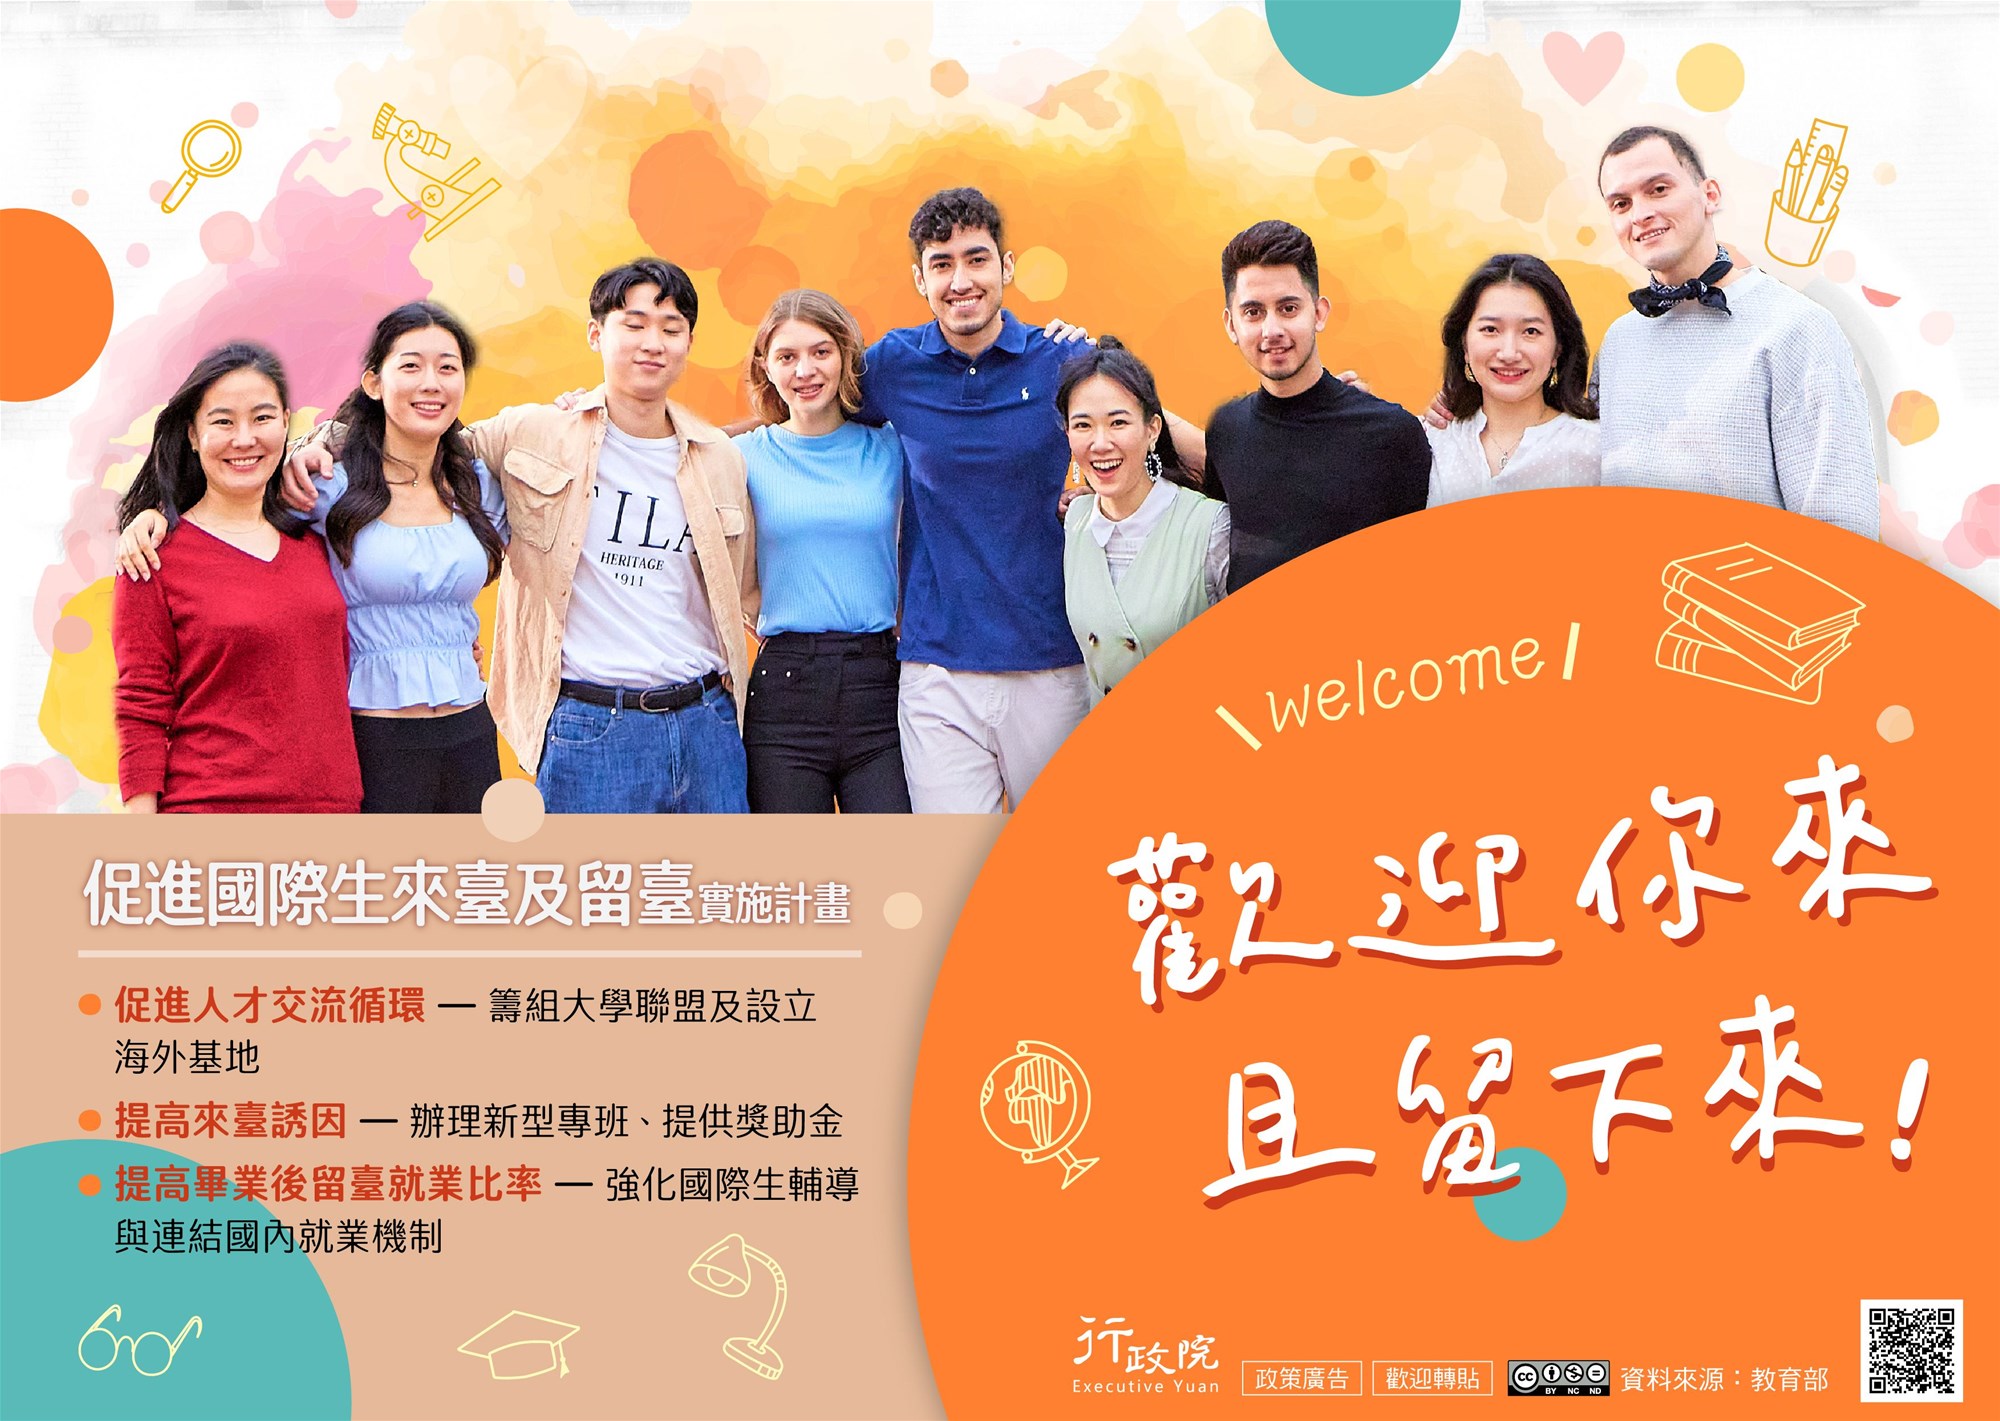 Mempromosikan siswa internasional untuk datang dan tinggal di Taiwan